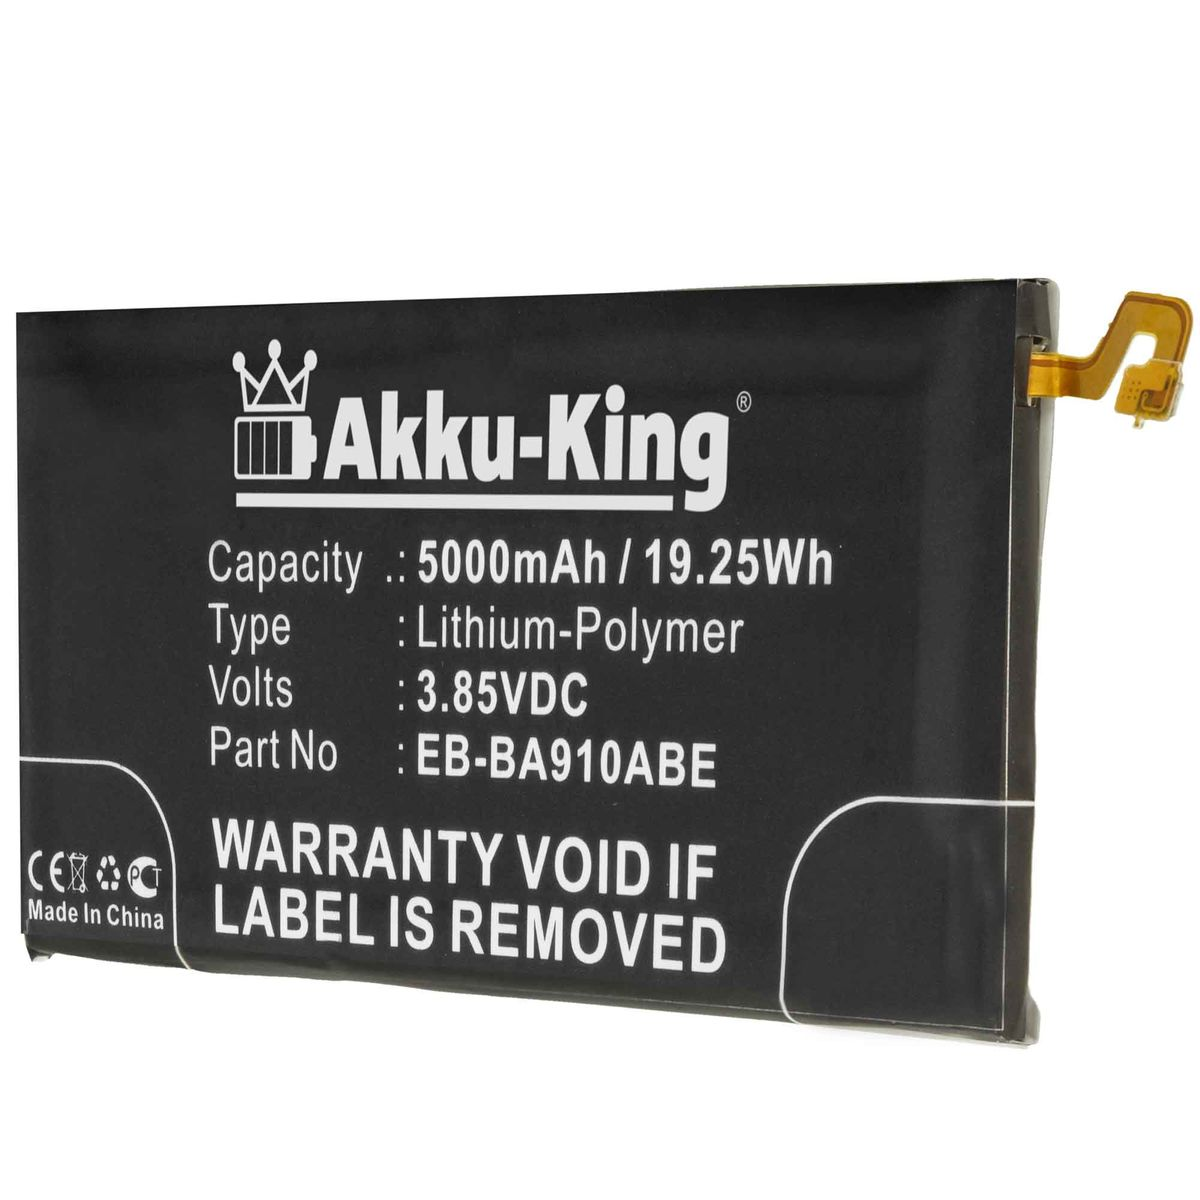 5000mAh 3.85 AKKU-KING EB-BA910ABE Li-Polymer mit Volt, Handy-Akku, Samsung Akku kompatibel